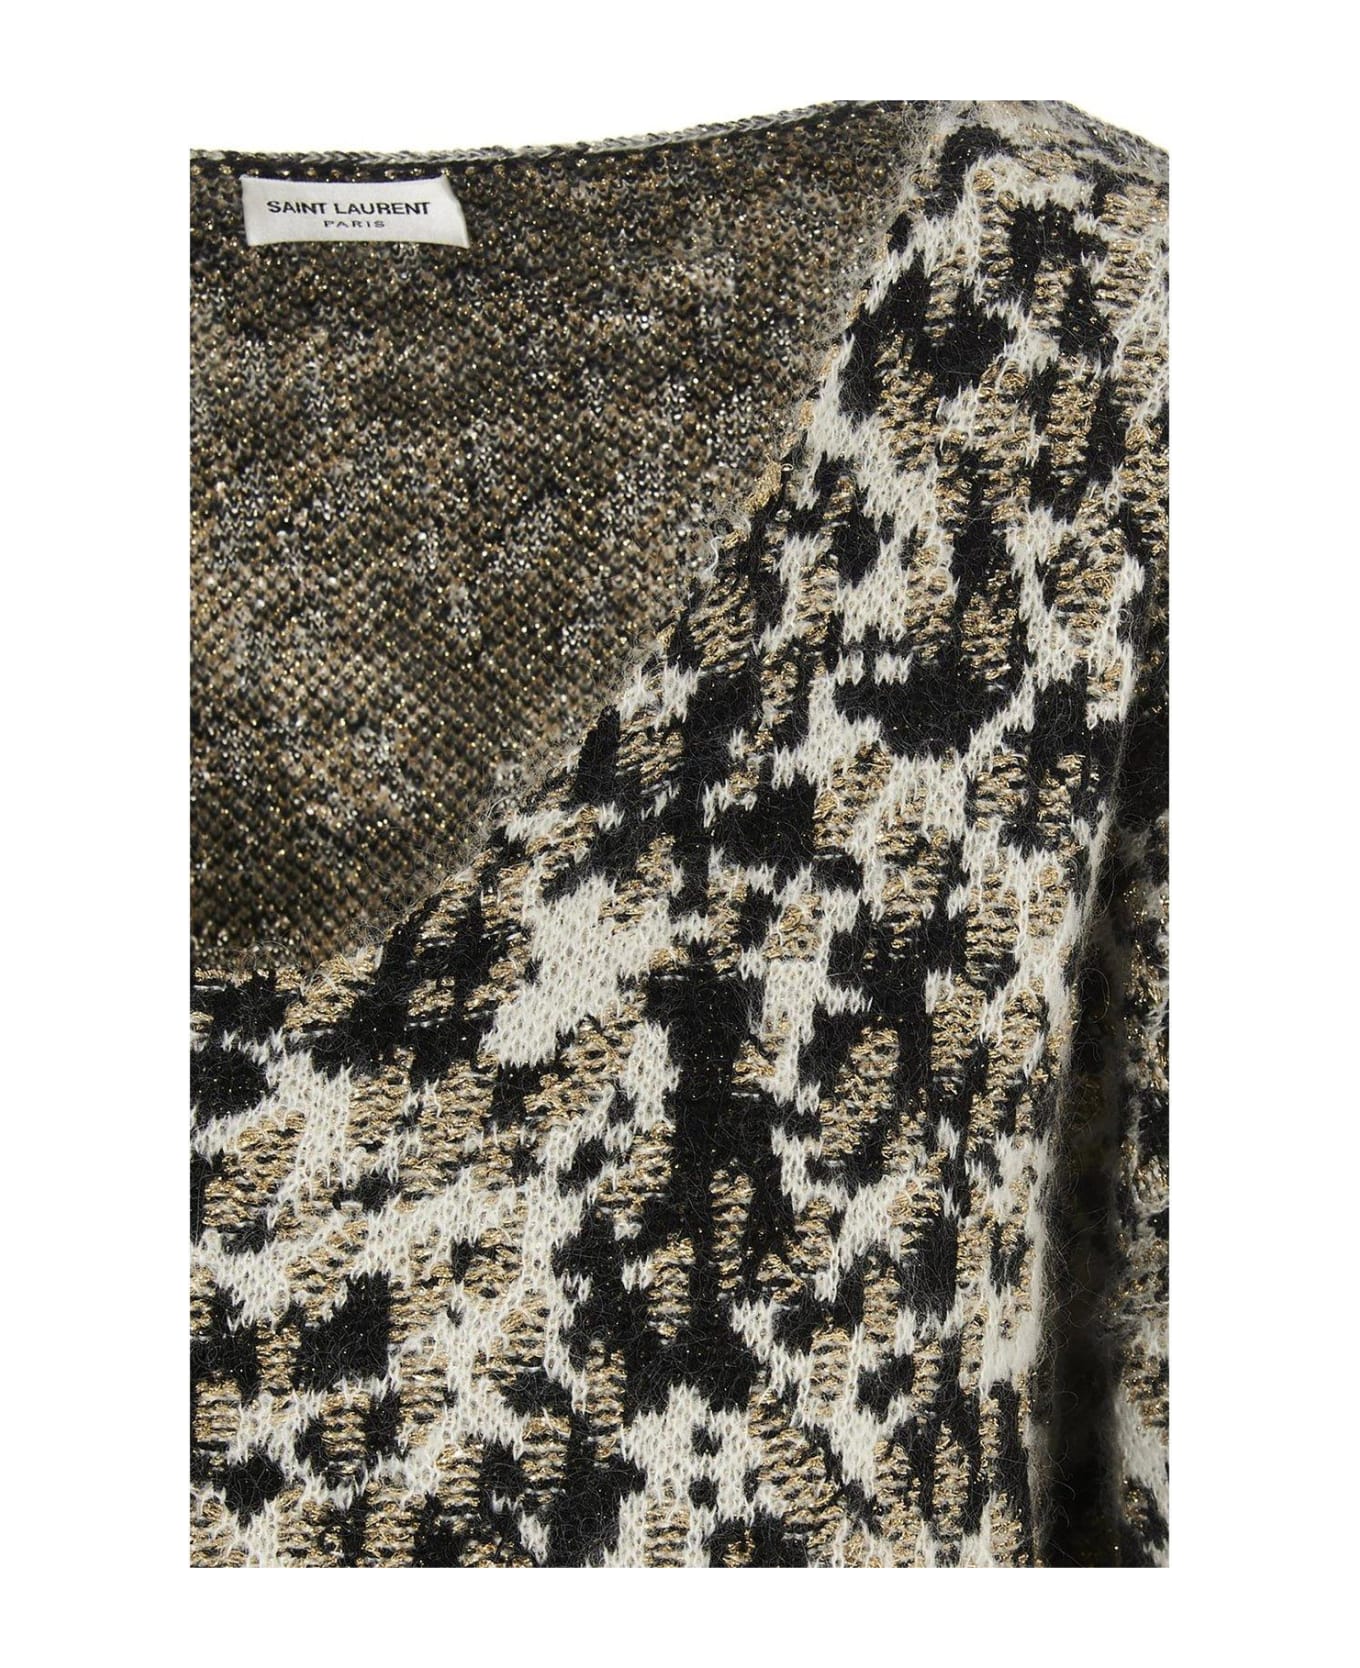 Saint Laurent Leopard Print Knit Sweater - BLACK